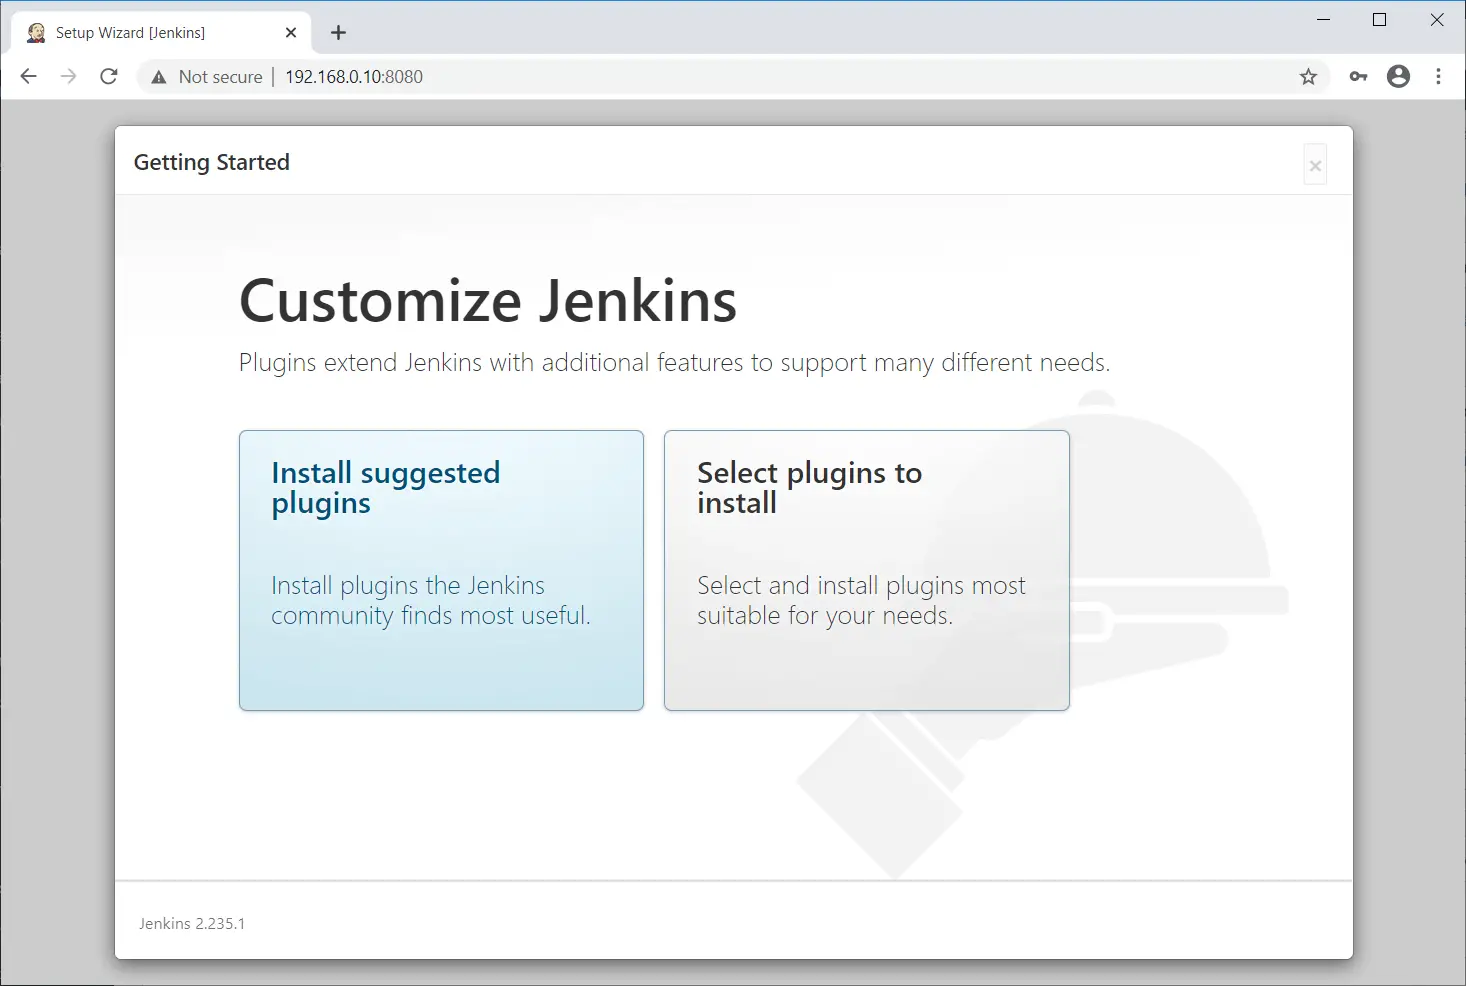 Customize Jenkins Installation